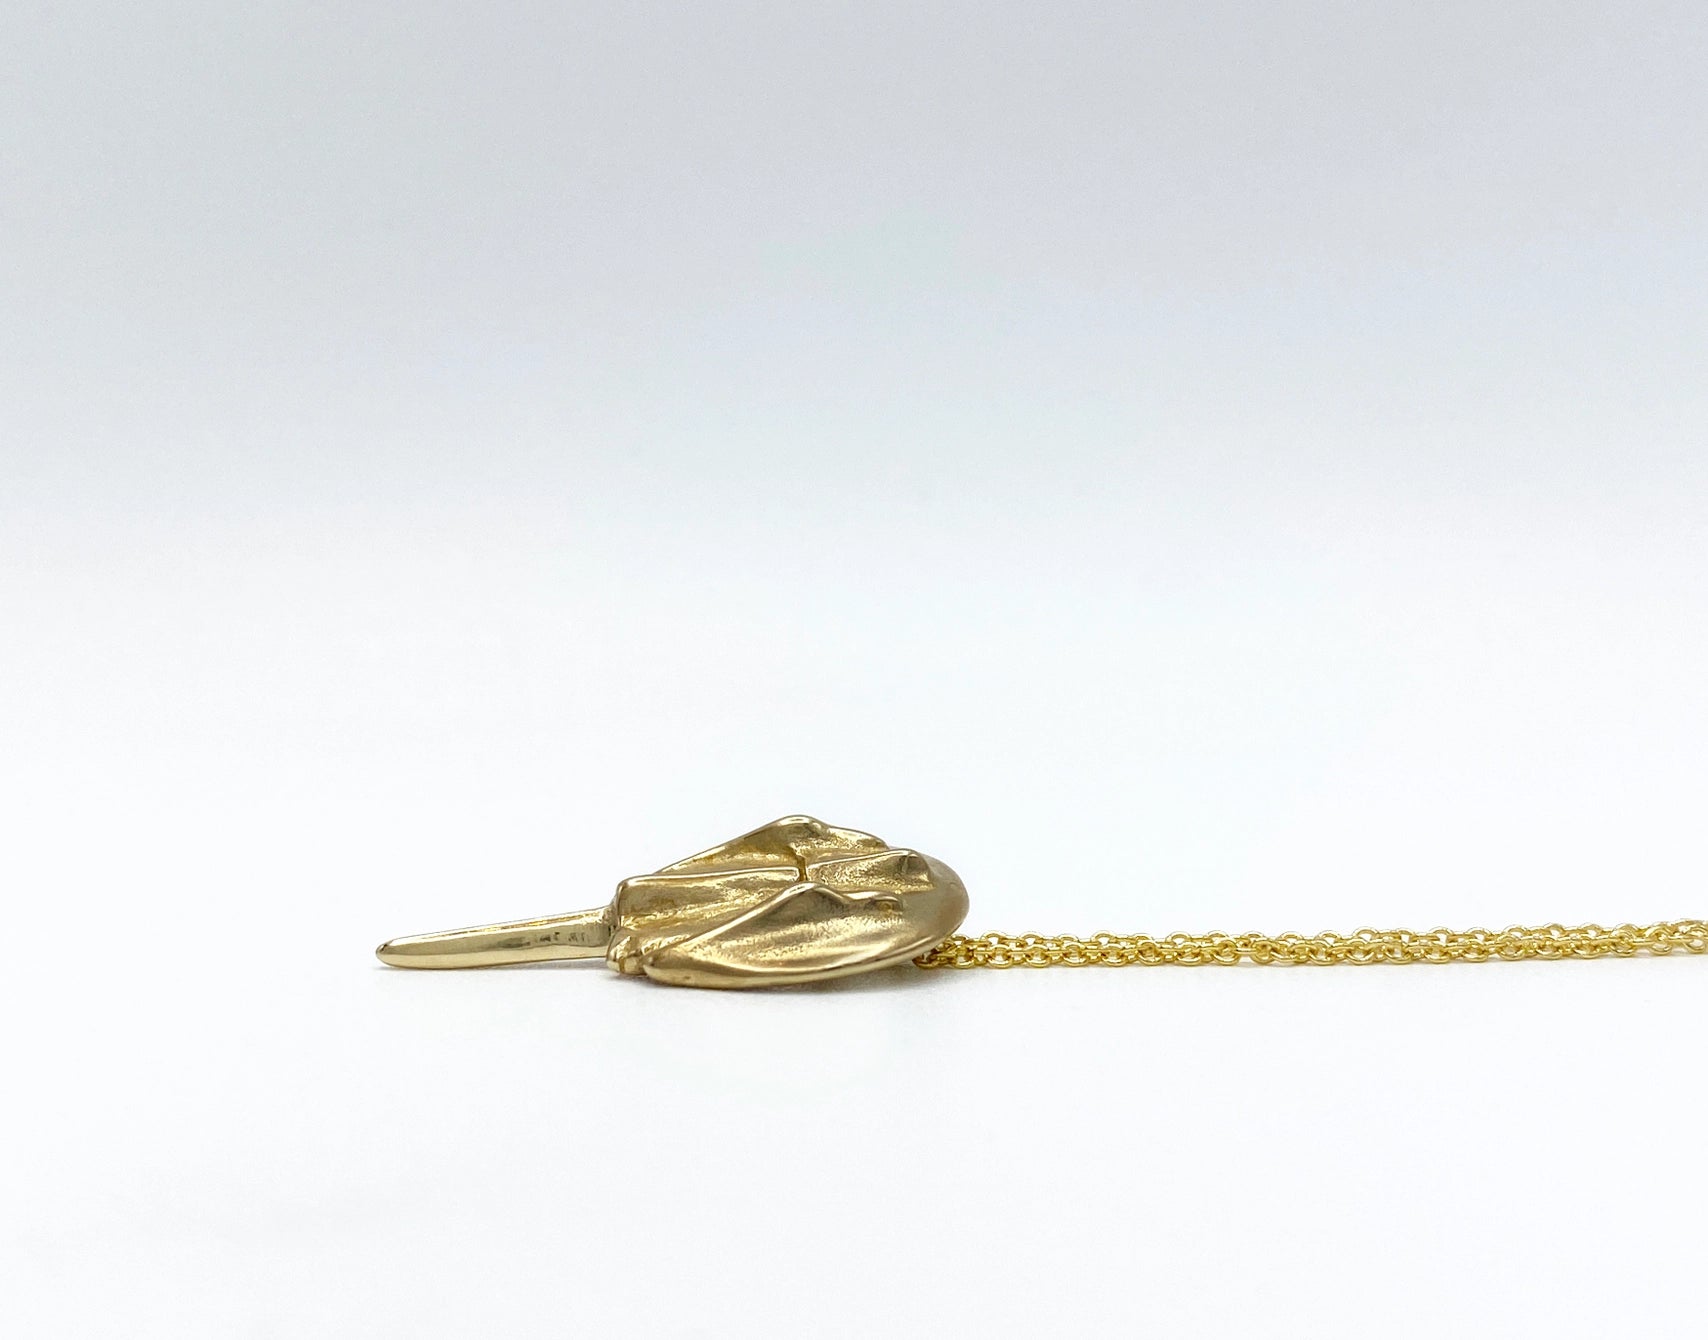 Gold filled halsketting met bronzen degenkrab